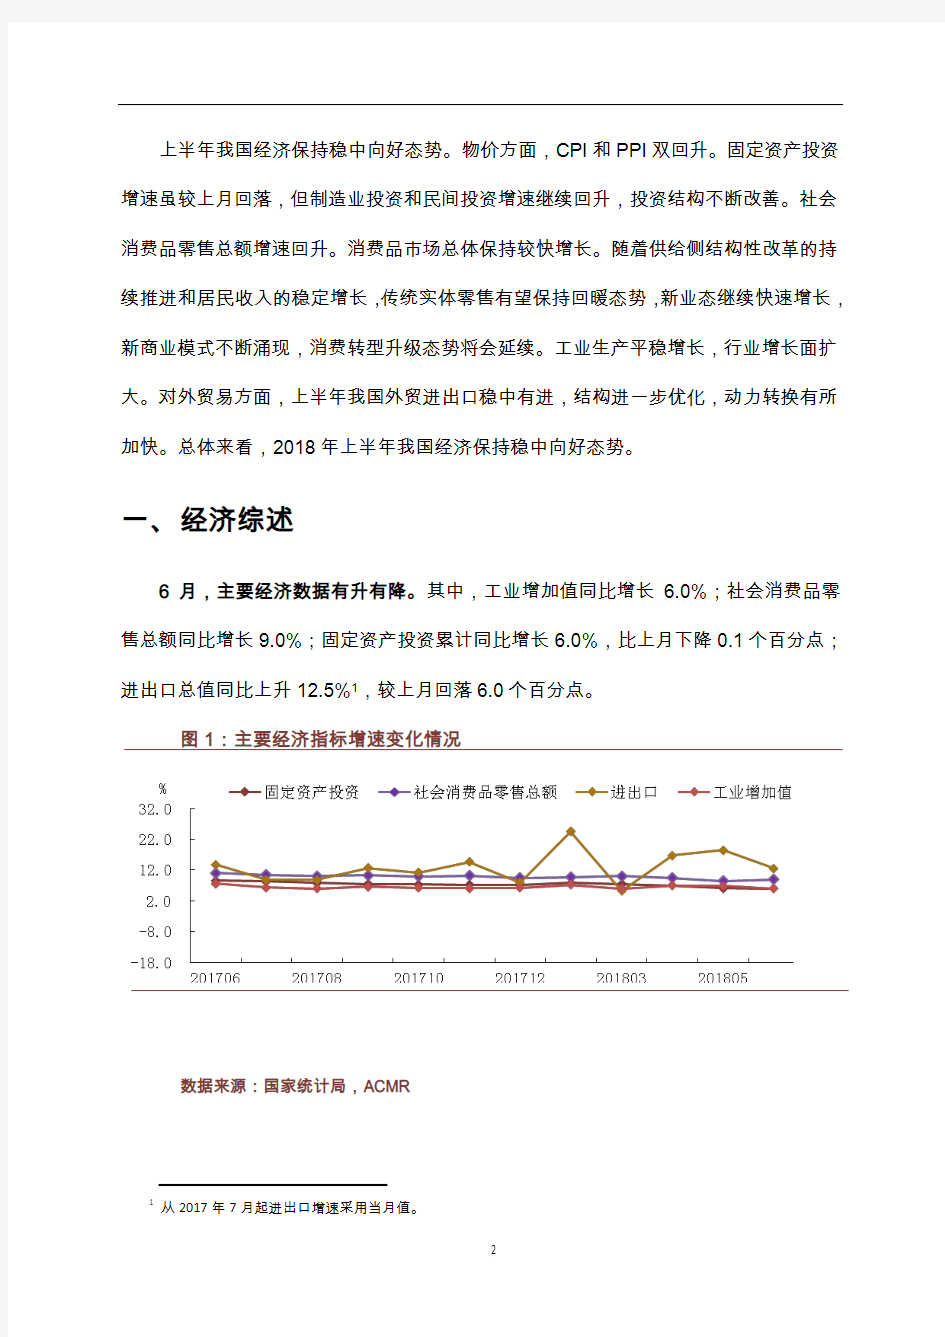 2018年上半年中国宏观经济数据分析报告